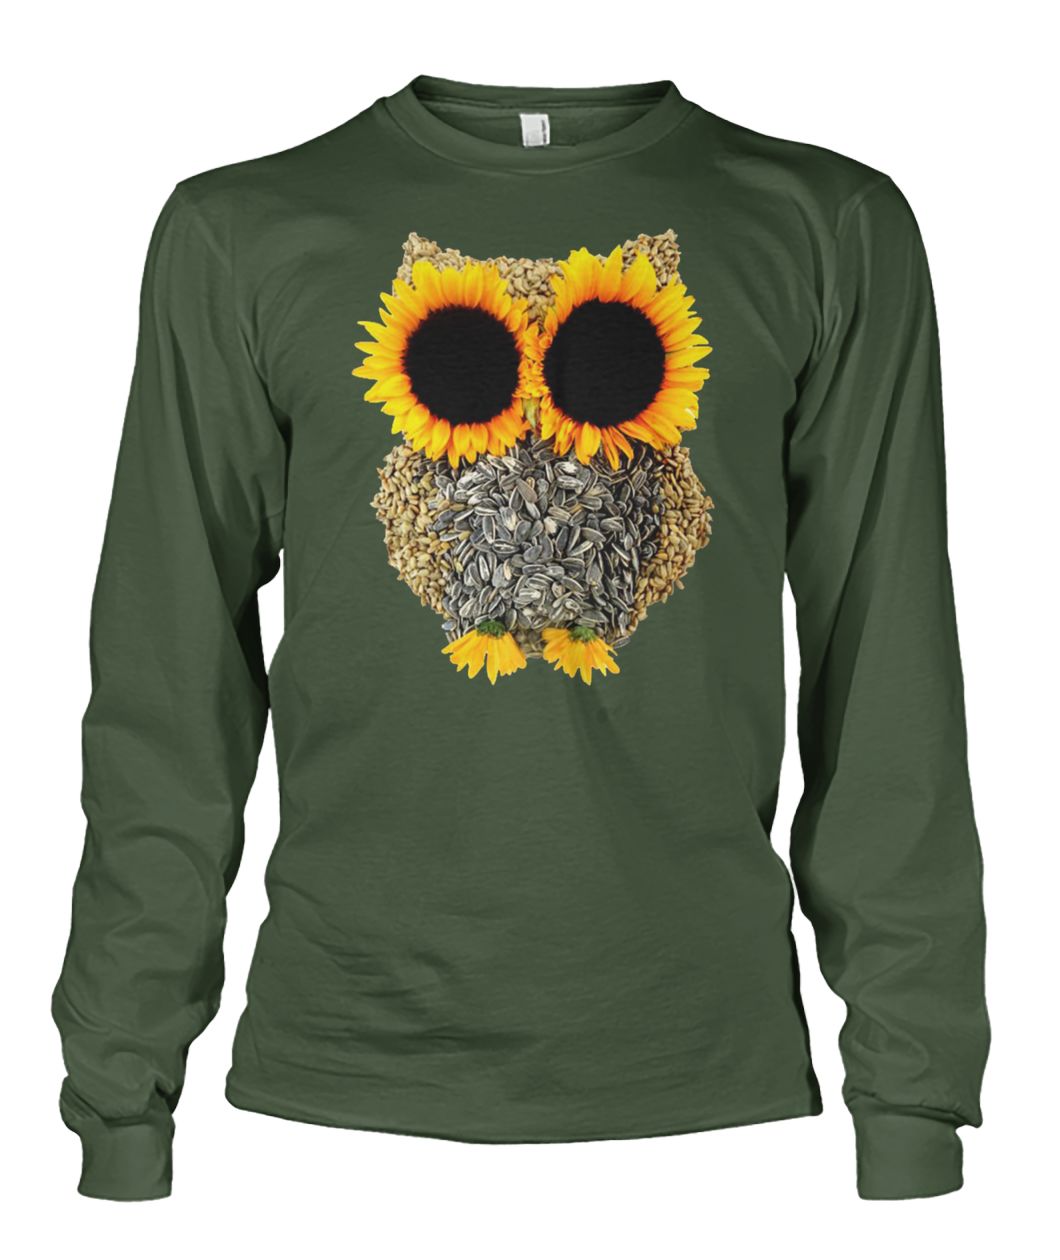 Owl sunflower unisex long sleeve